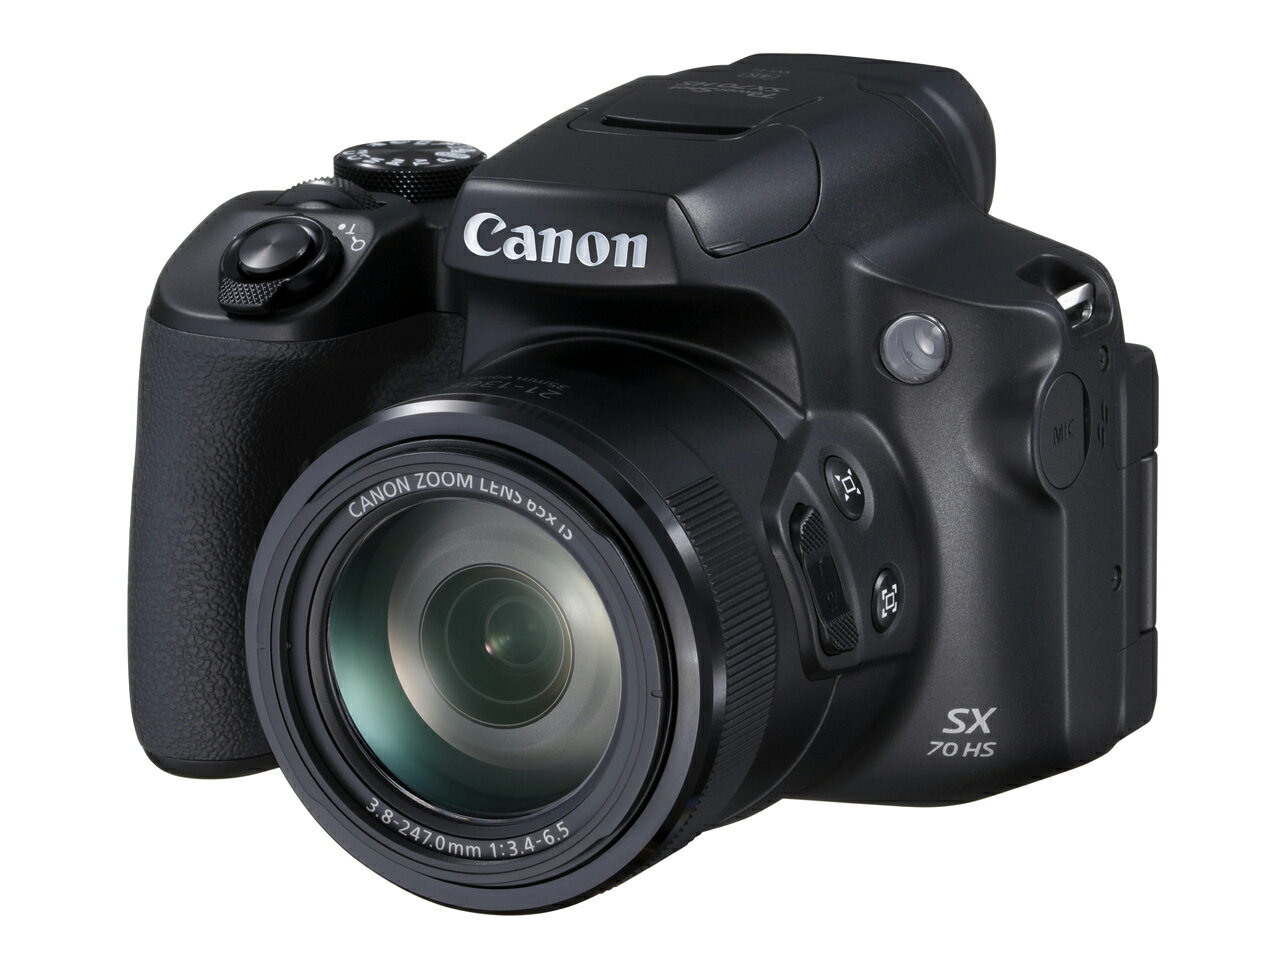 【お得・新品・送料無料・即納】Canonコンパクトデジタルカメラ PowerShot SX70 HS ※倉庫からの移動中に箱傷みあり※ 【外箱傷あり】